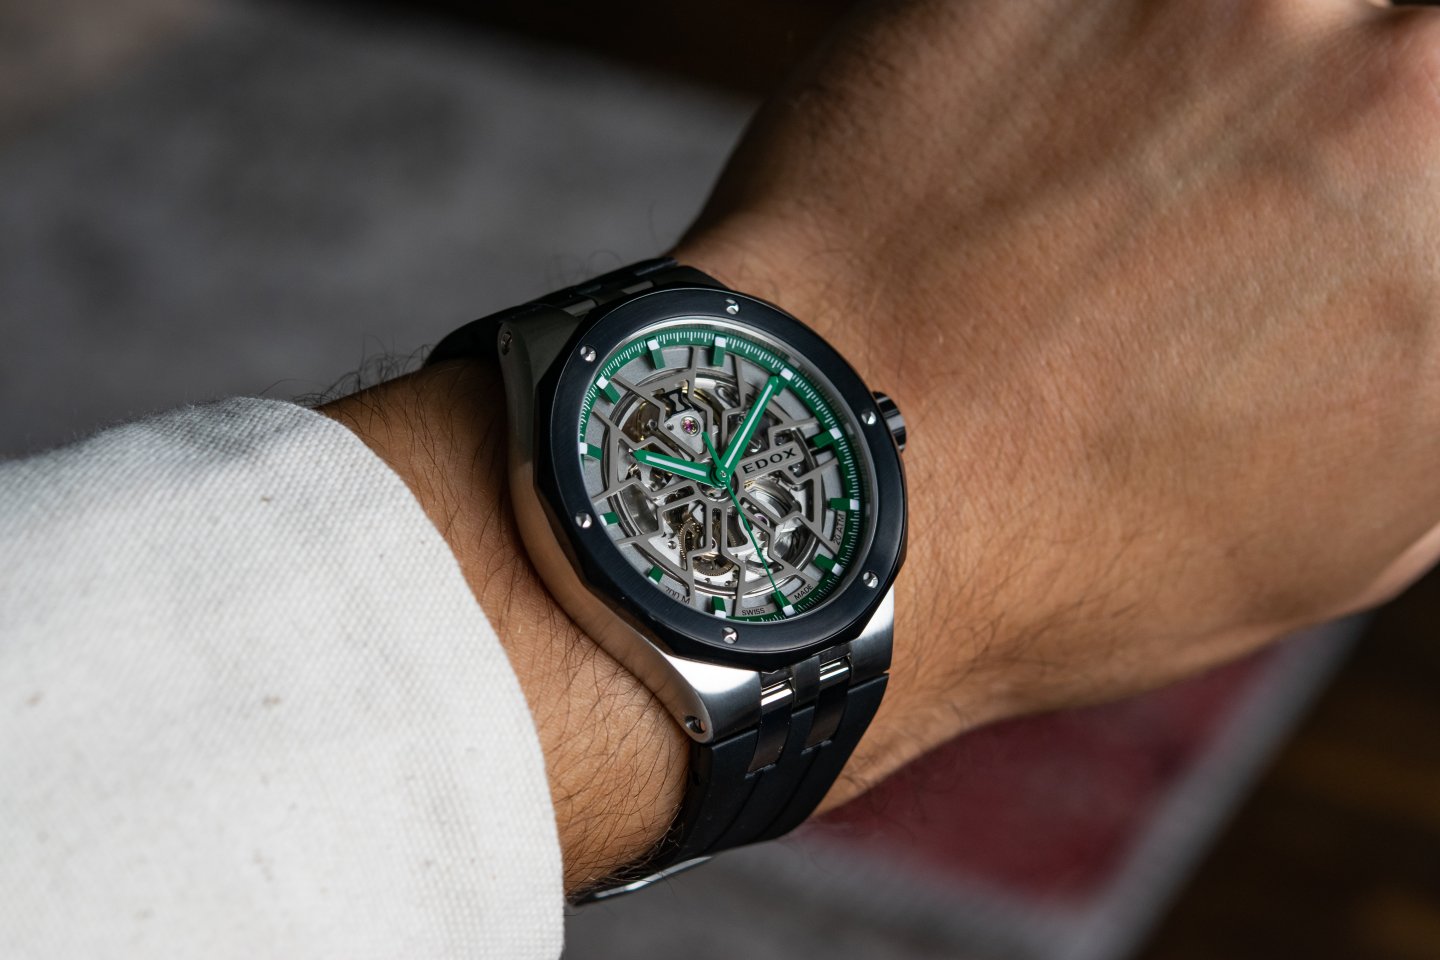 エドックスの 「デルフィン メカノ オートマティック」 にグリーンをアクセントカラーとした新デザインが登場～アワーグラスをモチーフにしたカットワークで魅せる時計